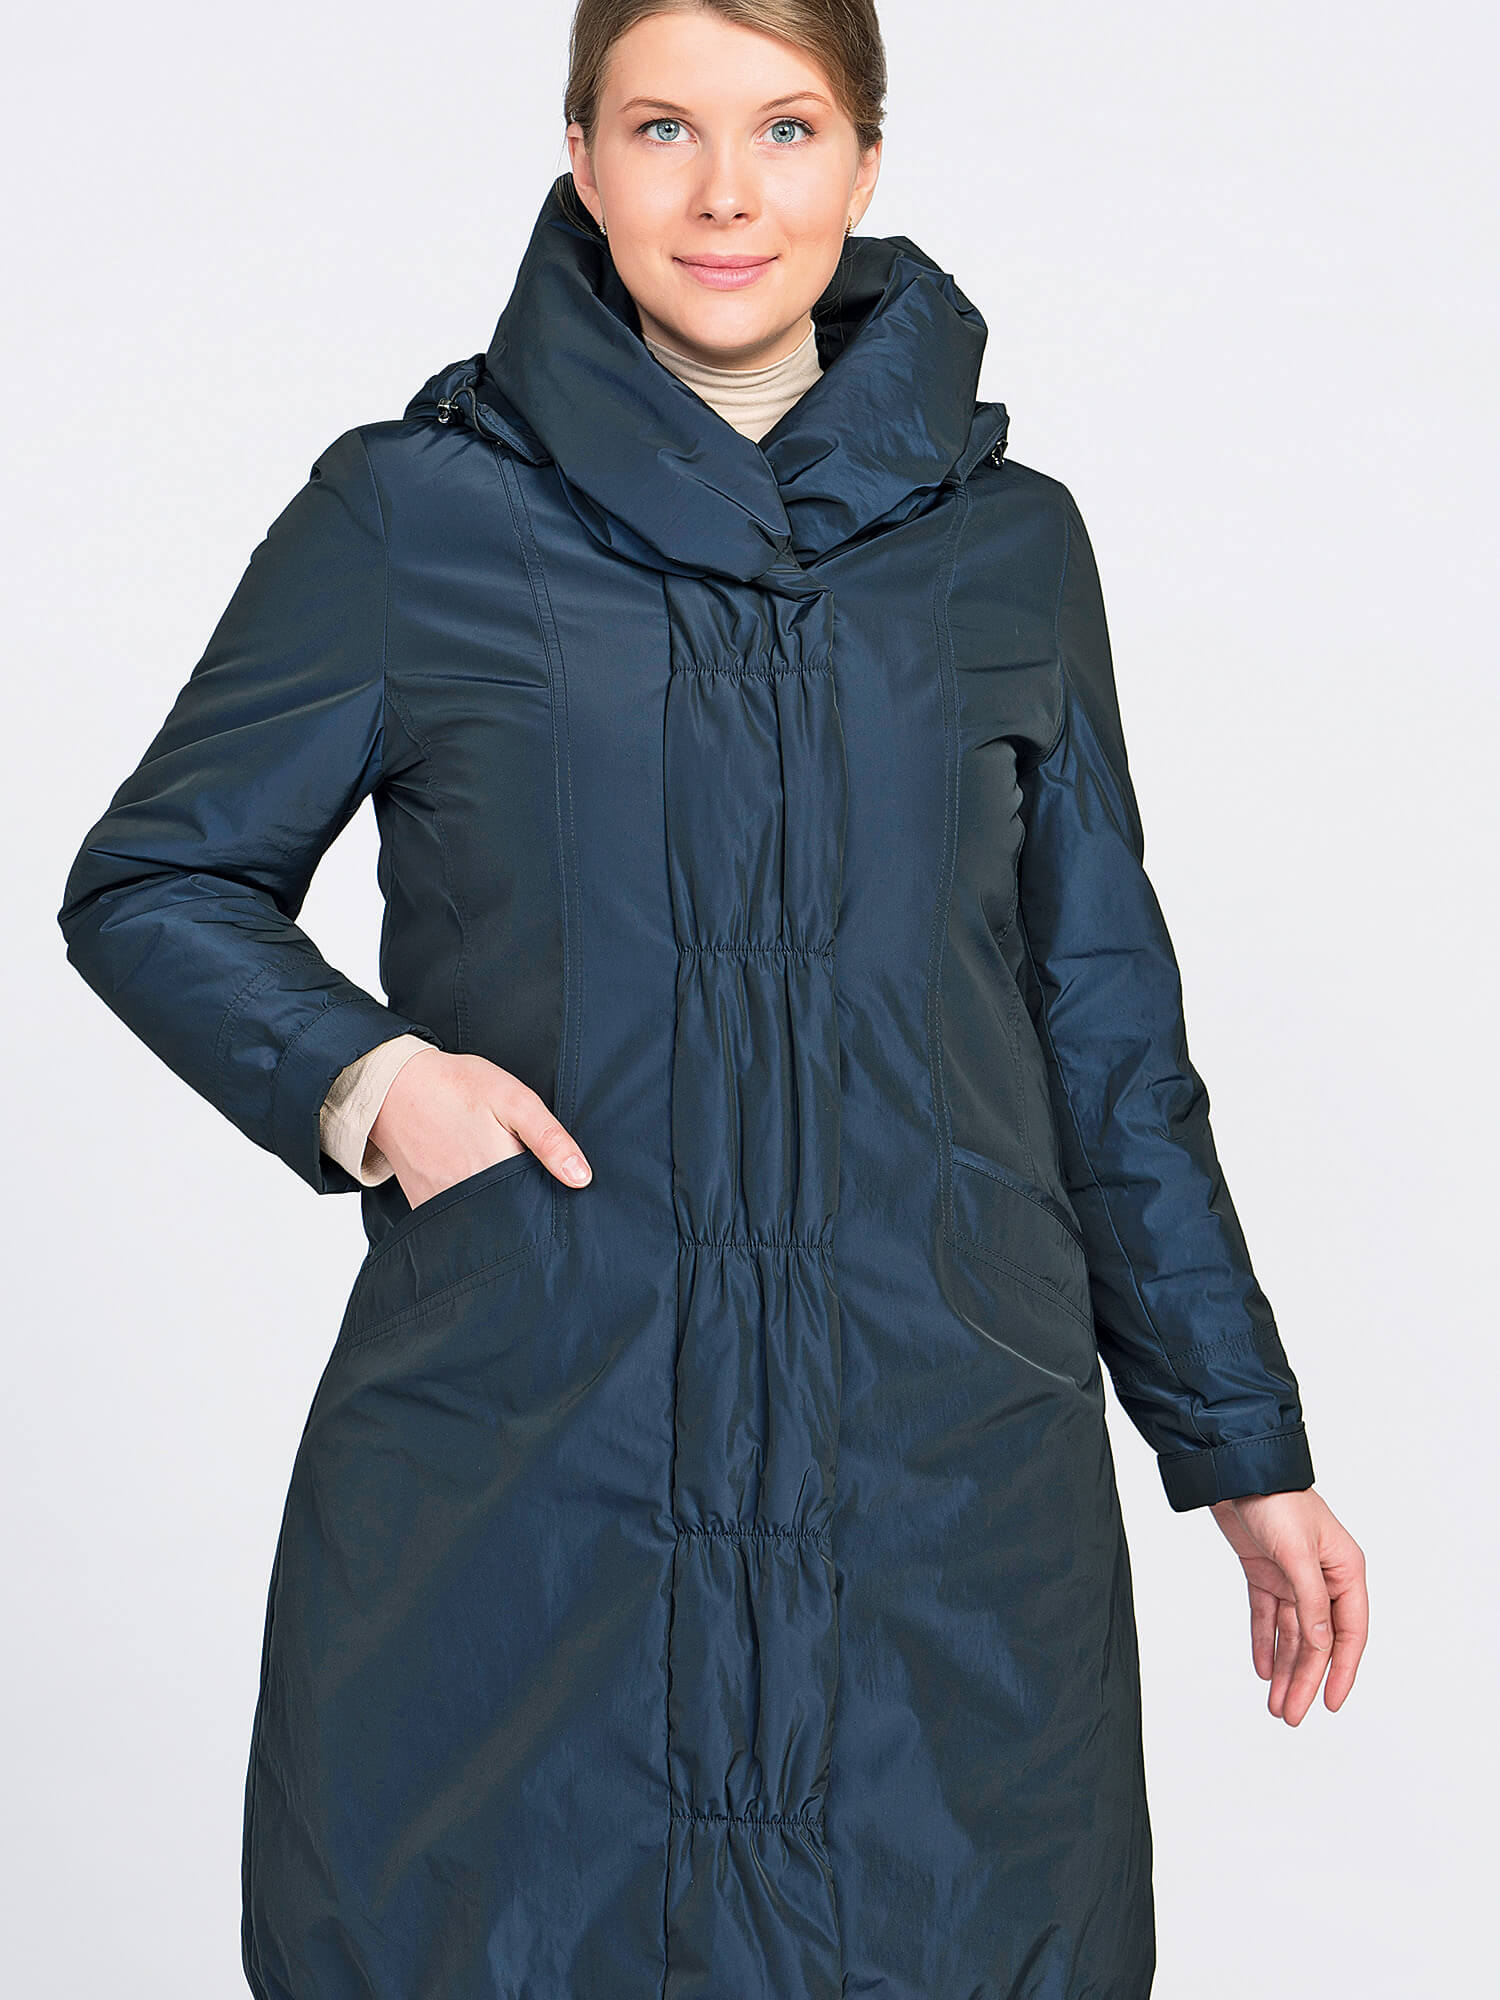 Куртки дикси коат. Пальто Dixi Coat. Пальто финское Dixi Coat. Пальто Dixi Coat 6120-294 (82). Финское пальто для женщин Dixi Coat.